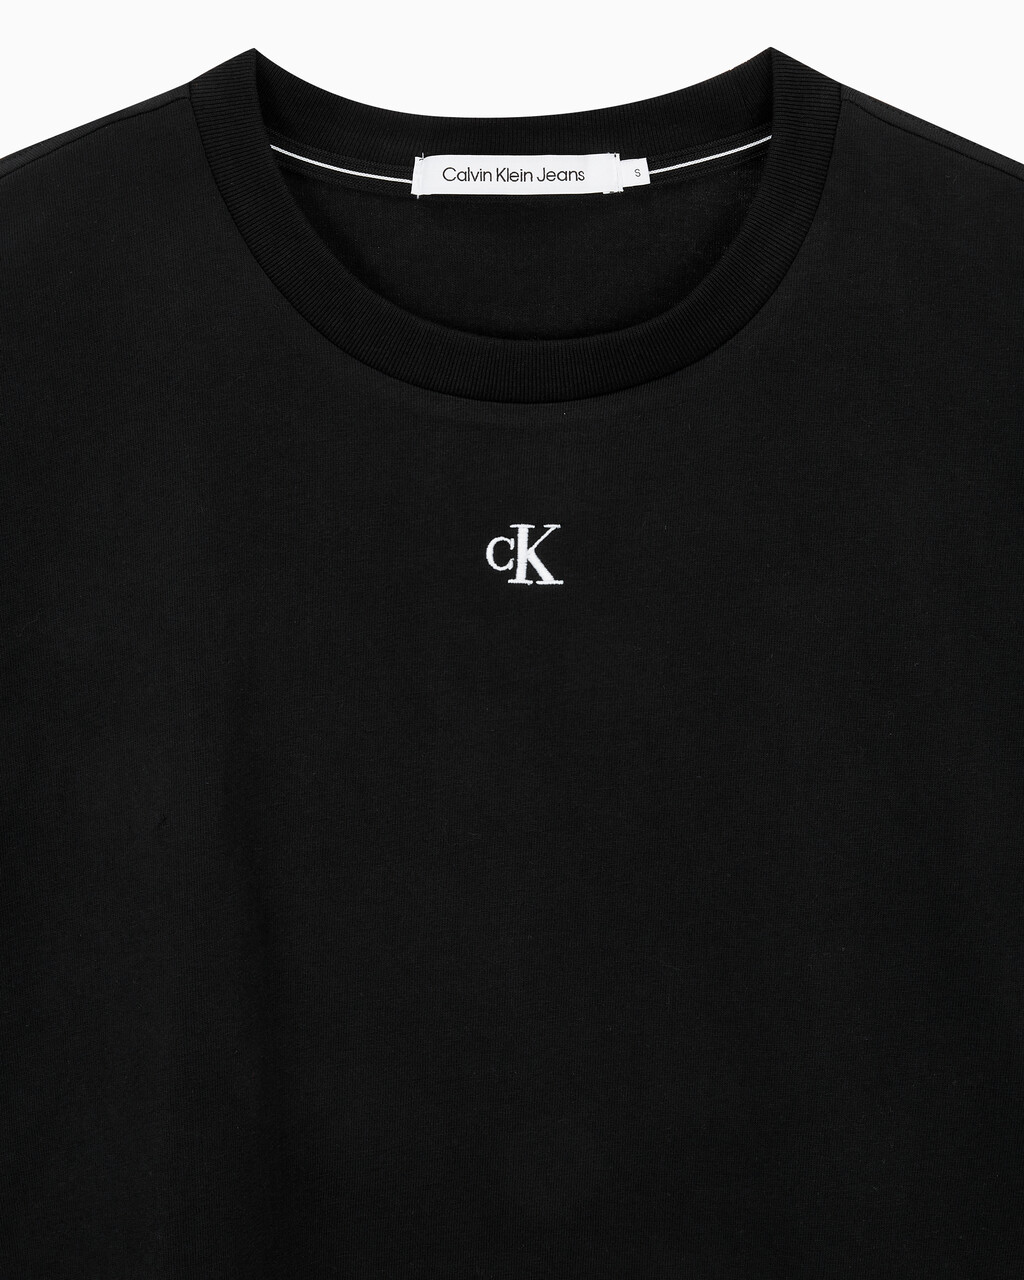 Buy 여성 그래픽 크롭 반팔 티셔츠 in color CK BLACK